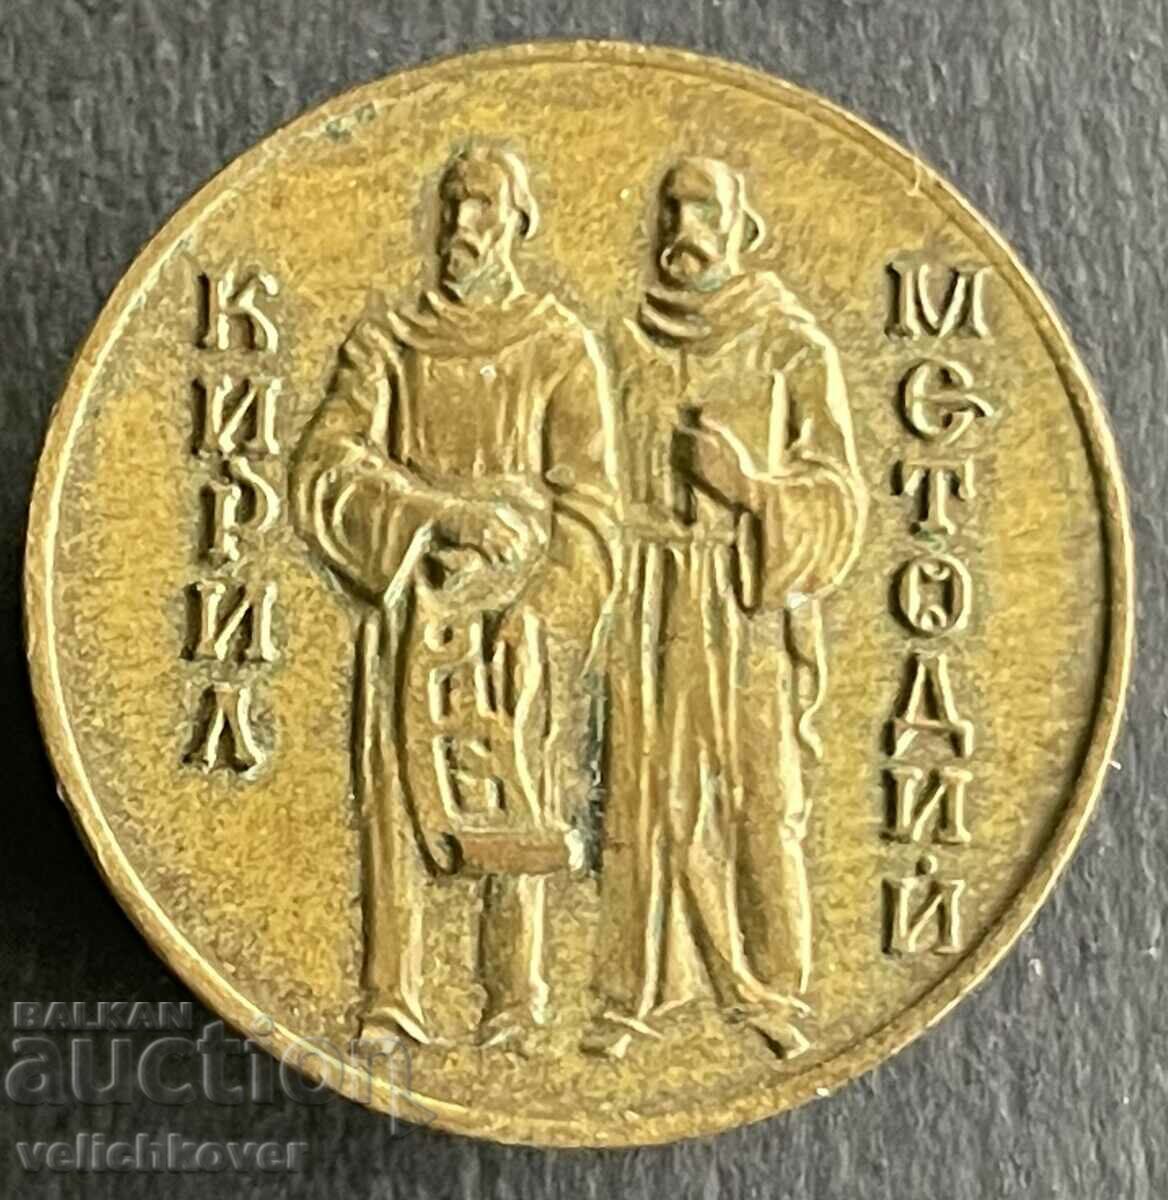 35952 България знак Кирил и Методий